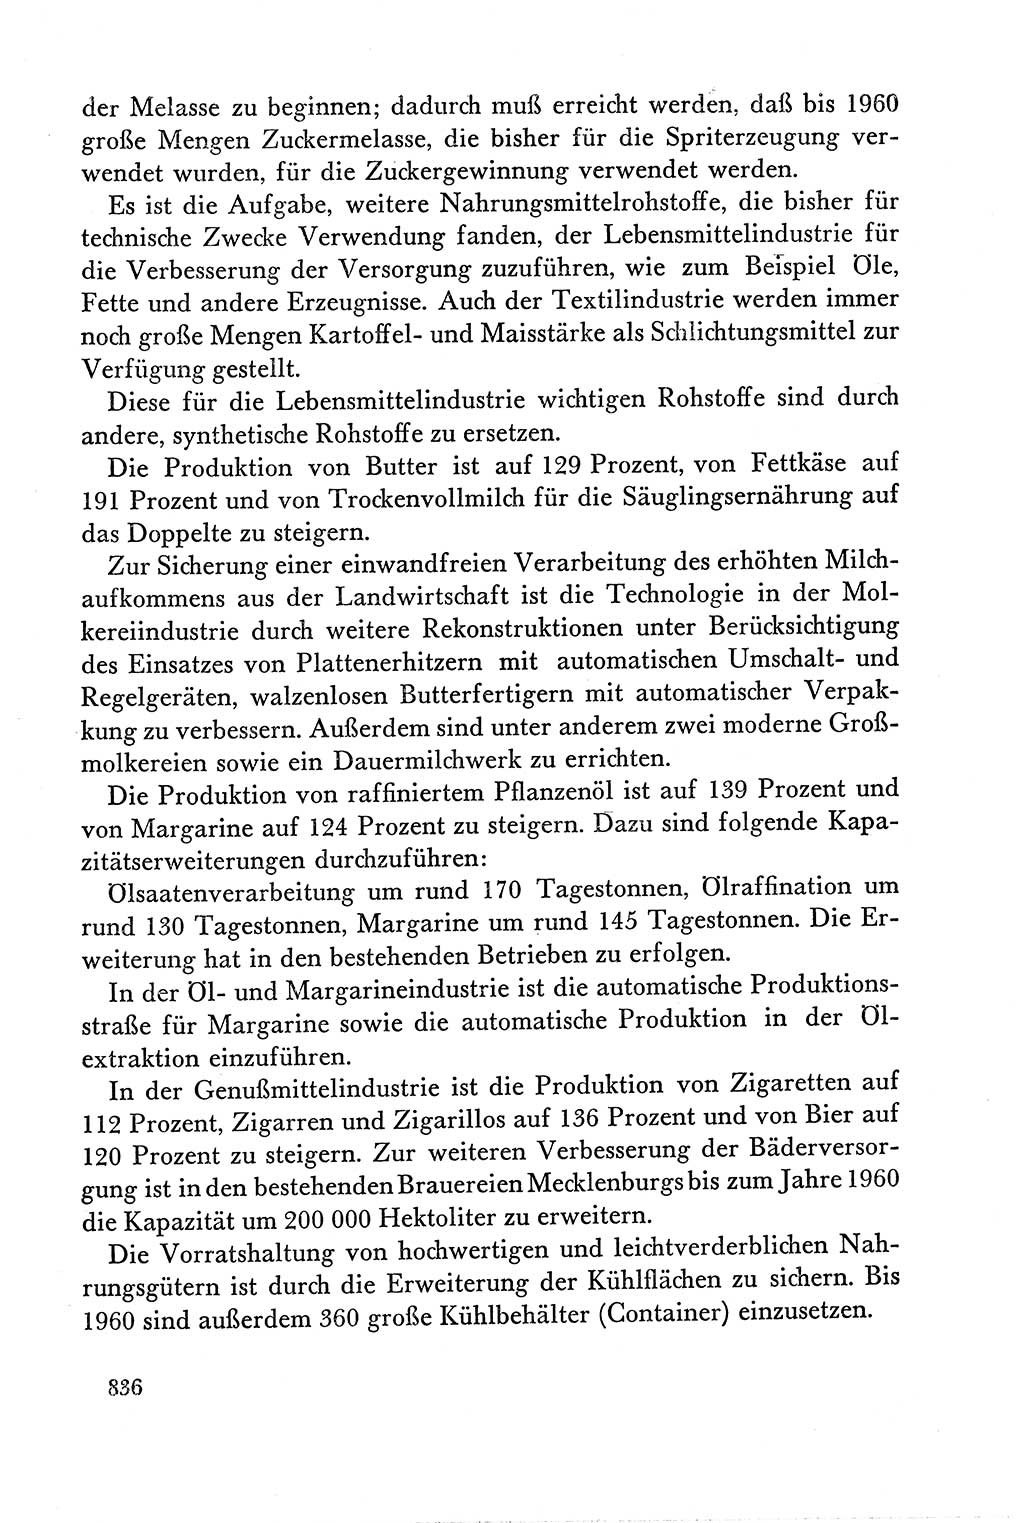 Dokumente der Sozialistischen Einheitspartei Deutschlands (SED) [Deutsche Demokratische Republik (DDR)] 1958-1959, Seite 836 (Dok. SED DDR 1958-1959, S. 836)